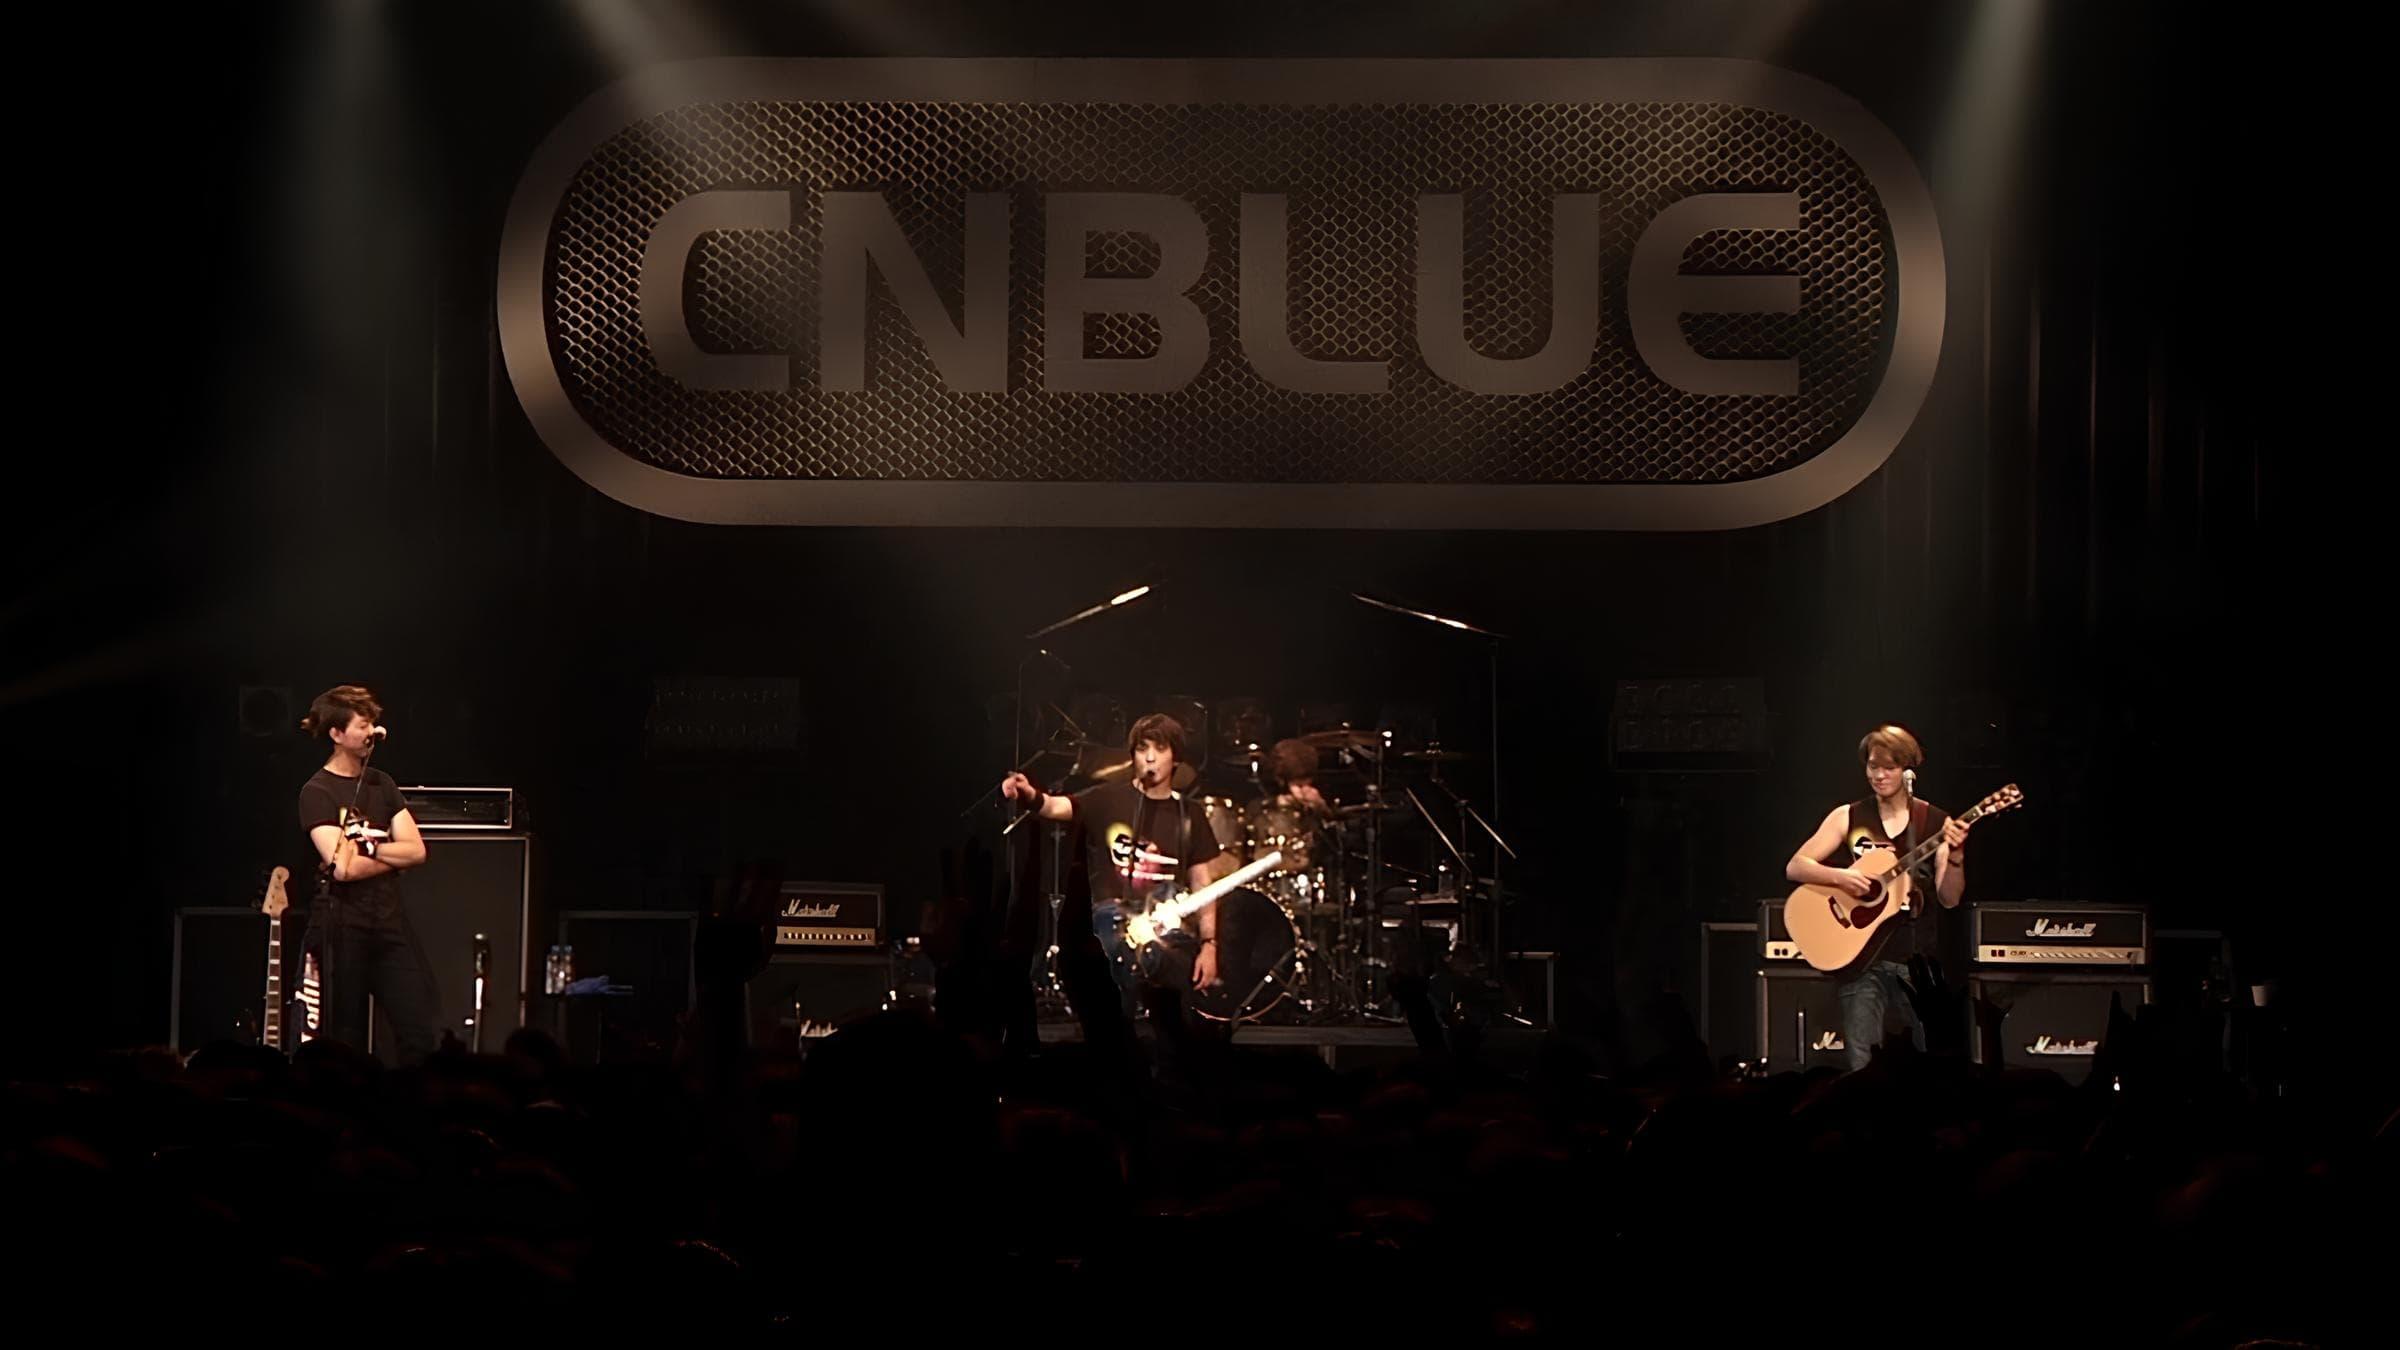 CNBLUE Zepp Tour 2013 ~Lady~ backdrop